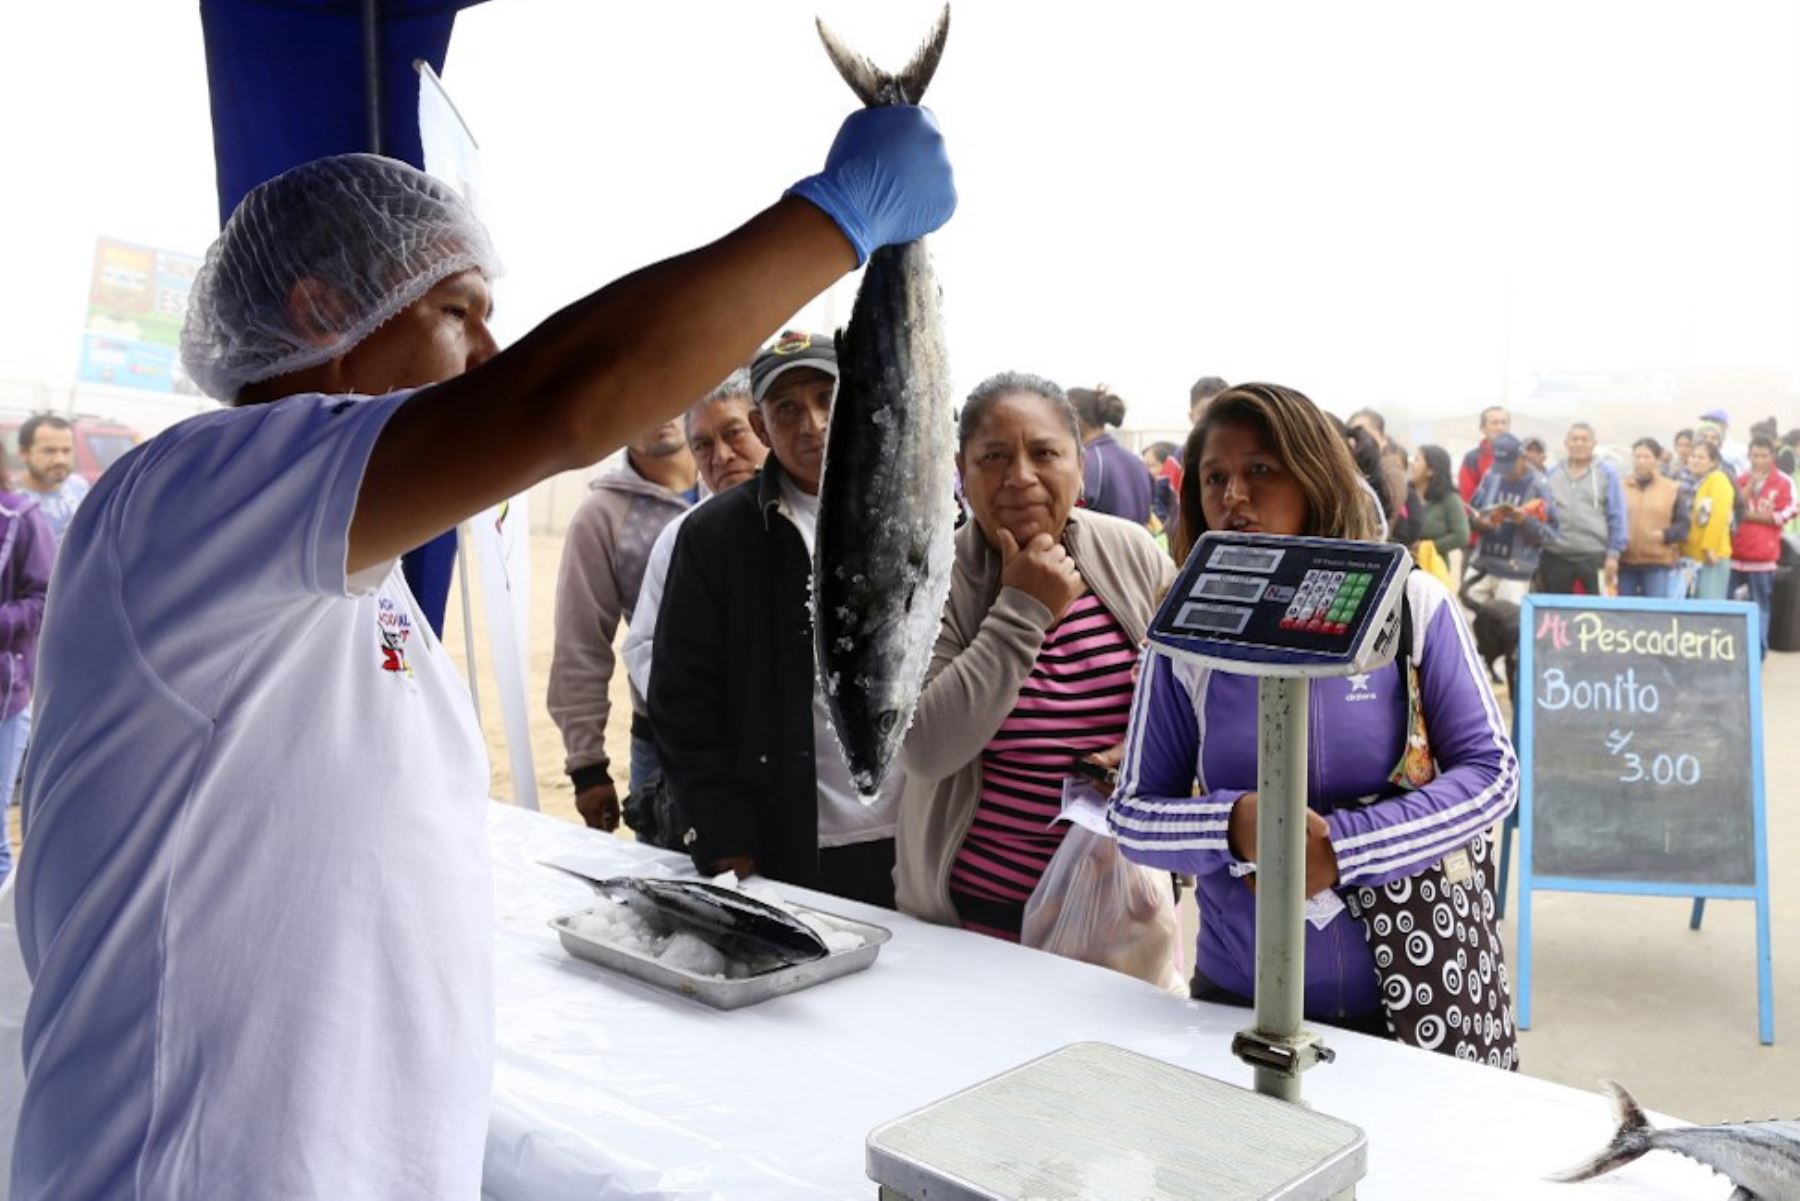 La ciudad de Chincheros será, este jueves 16 de mayo, sede del Festival “Mi Pescadería”, espacio donde se venderá pescado de alta calidad y conservas a bajo costo.